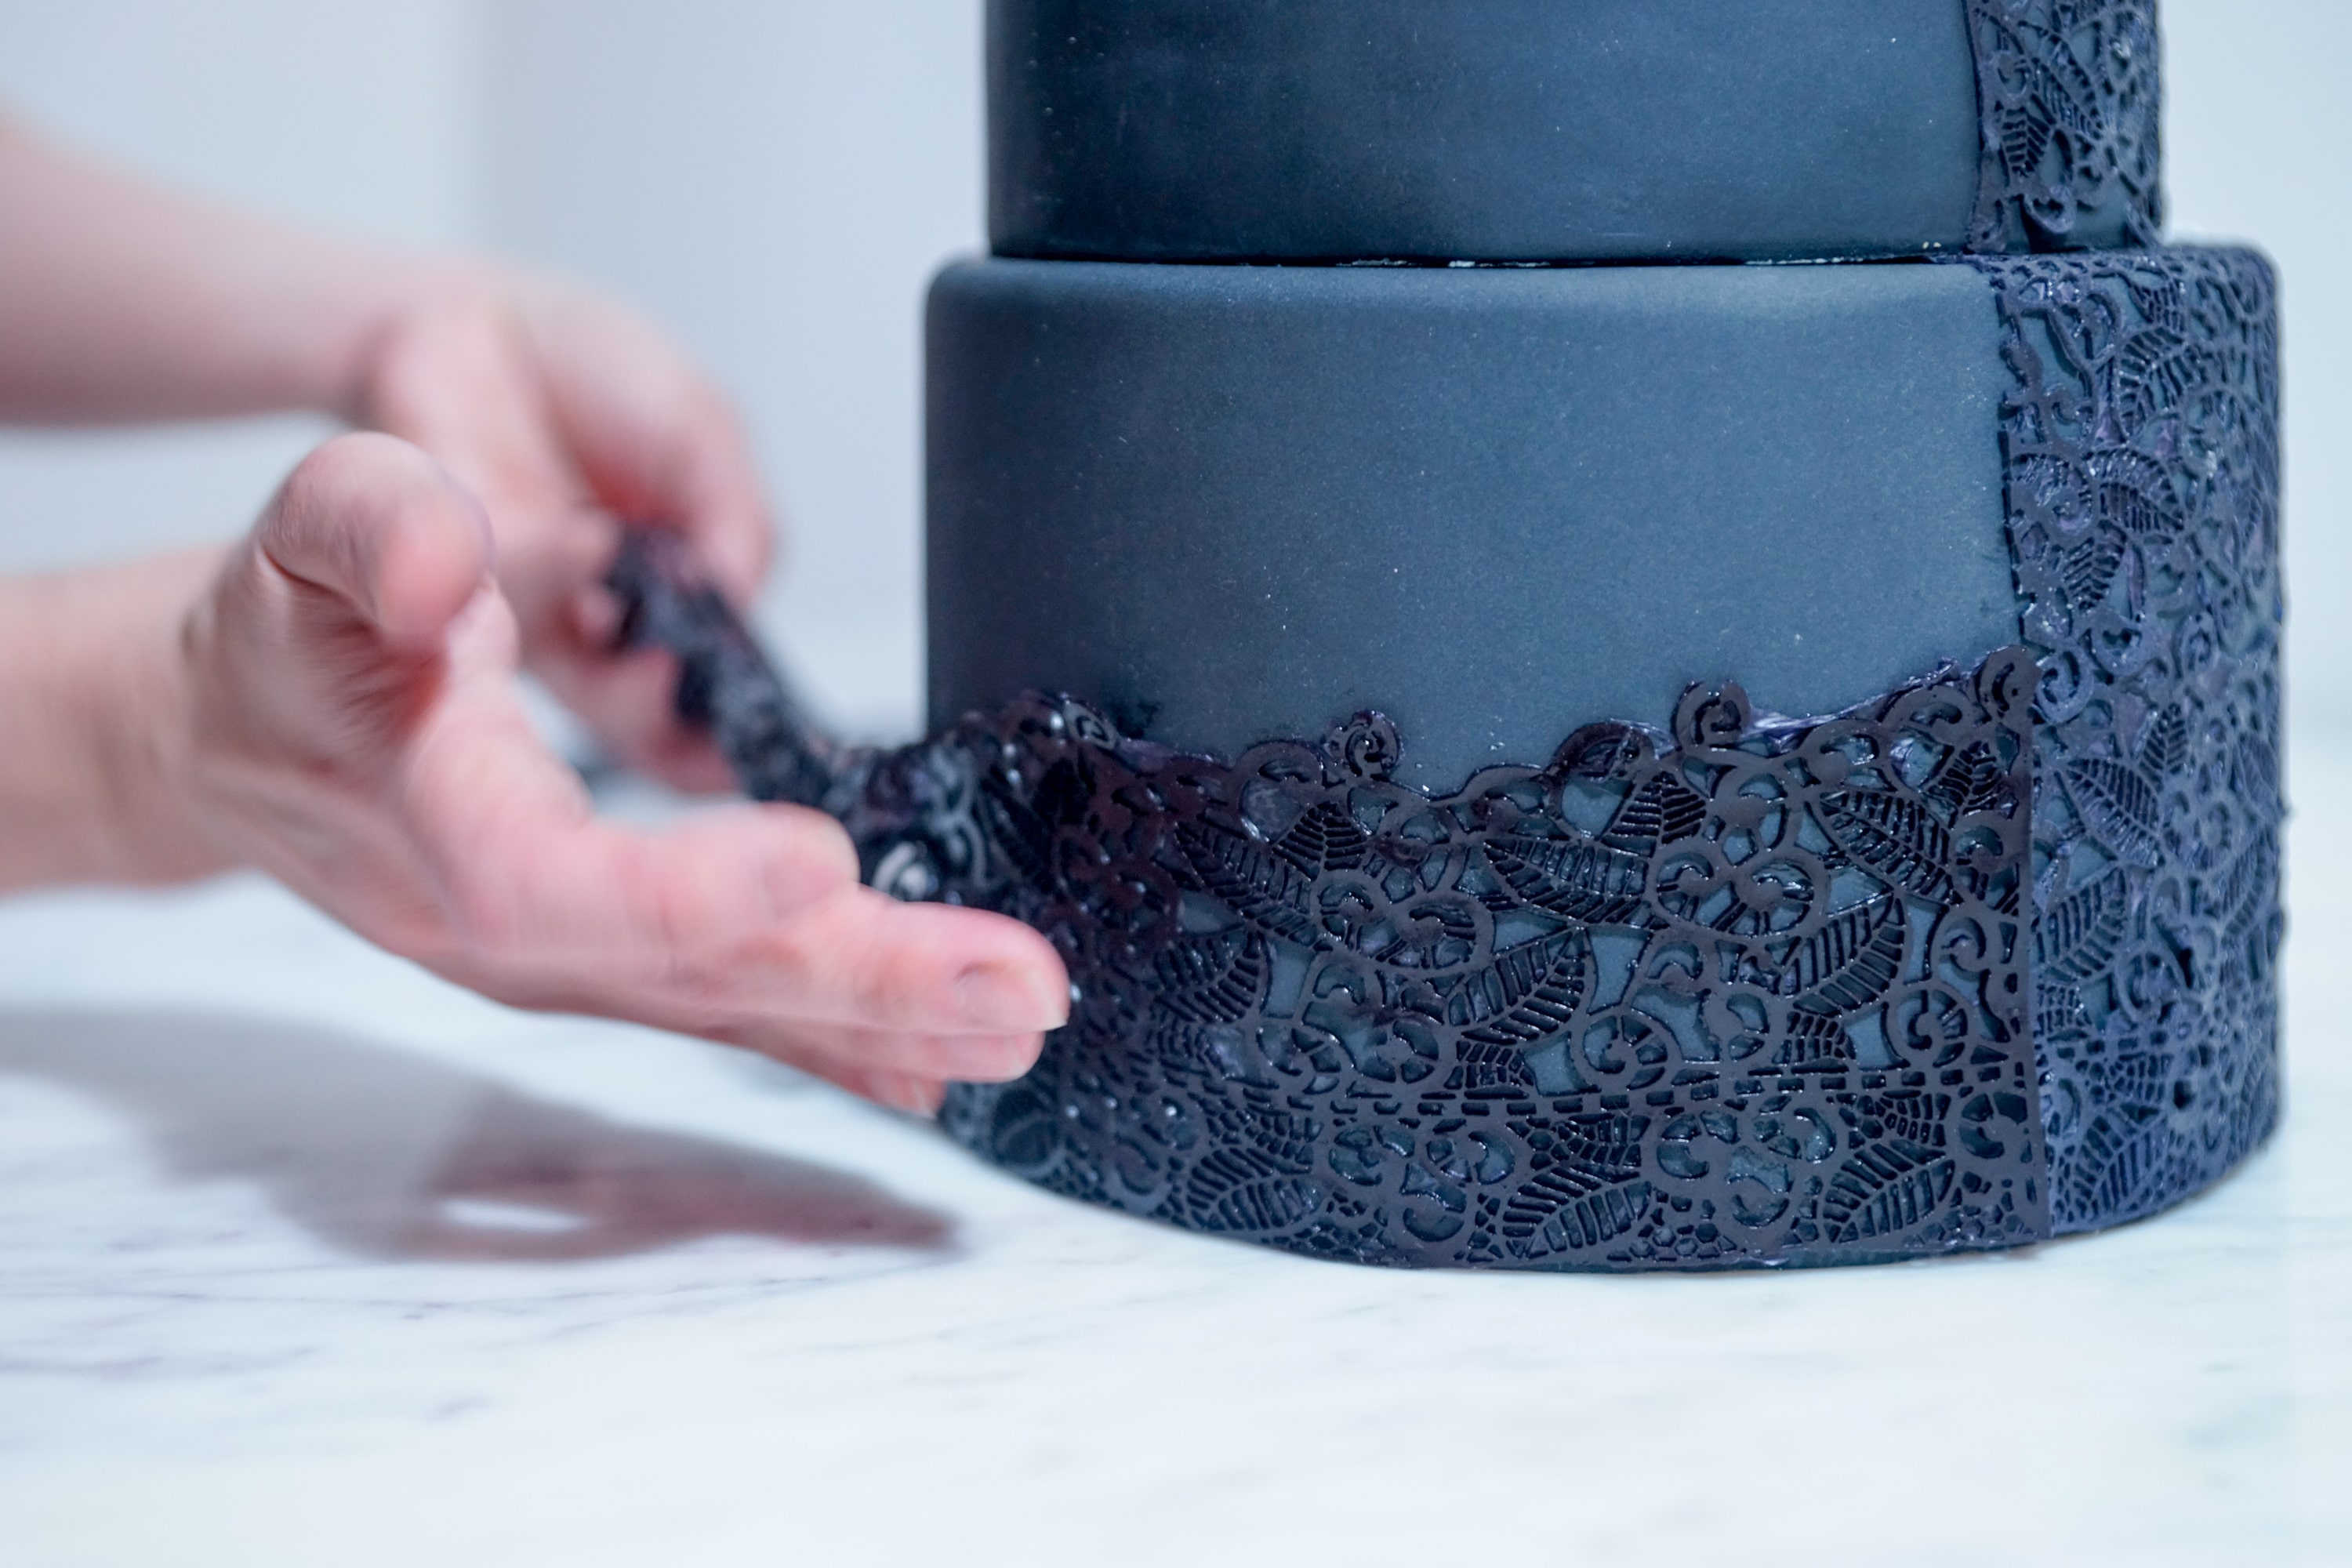 Black Lace Wedding Cake